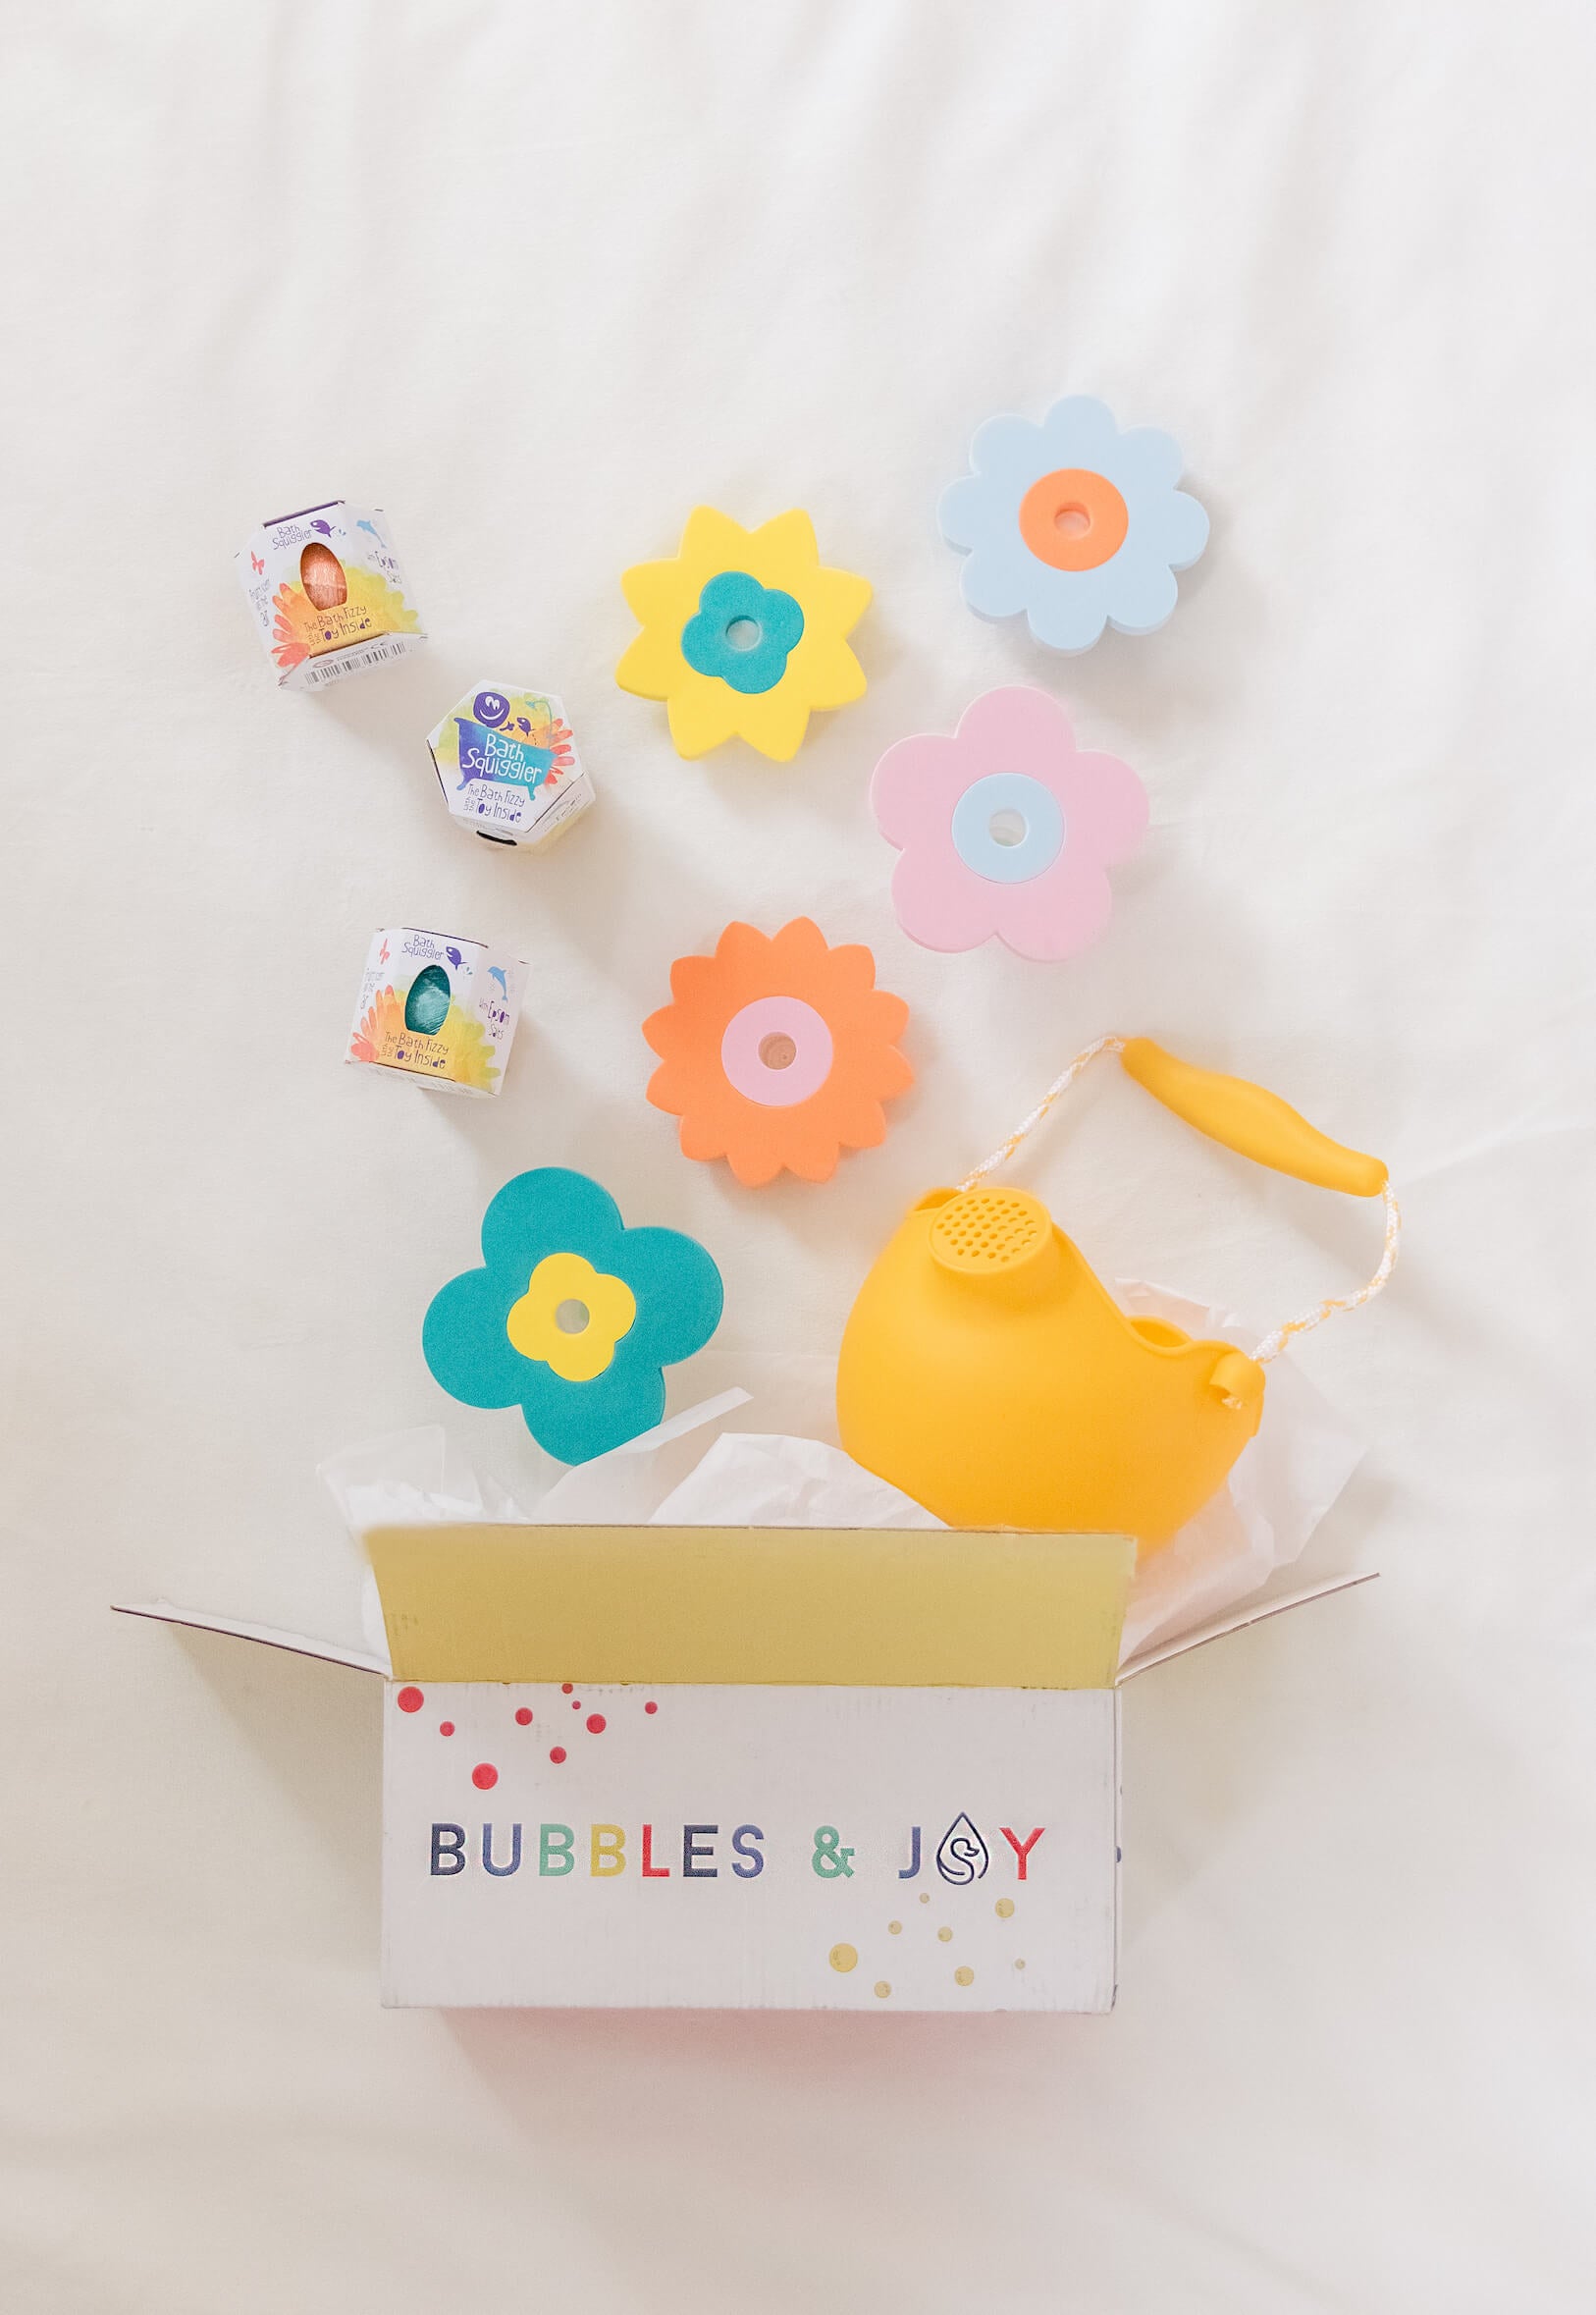 Bubbles & Joy Kids Bath Subscription Box – BubblesandJoy